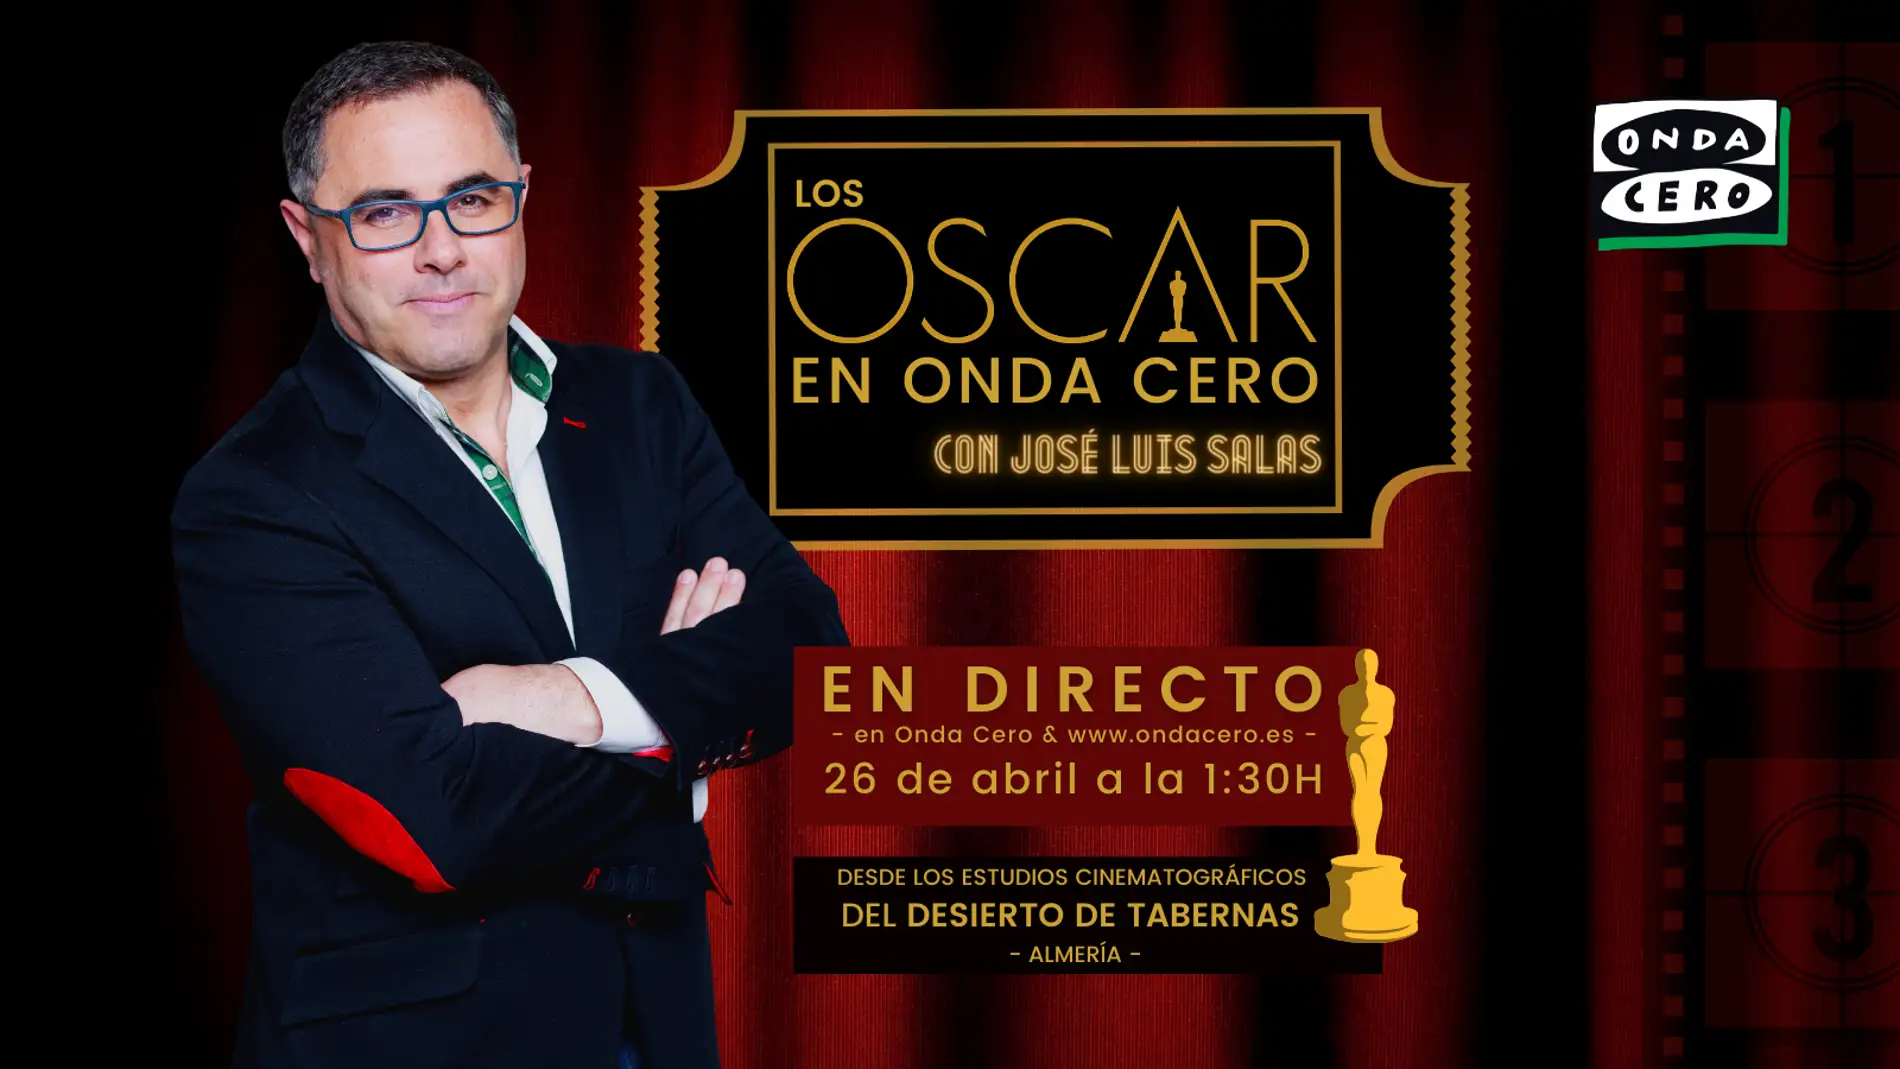 Los Oscar en Onda Cero, con José Luis Salas